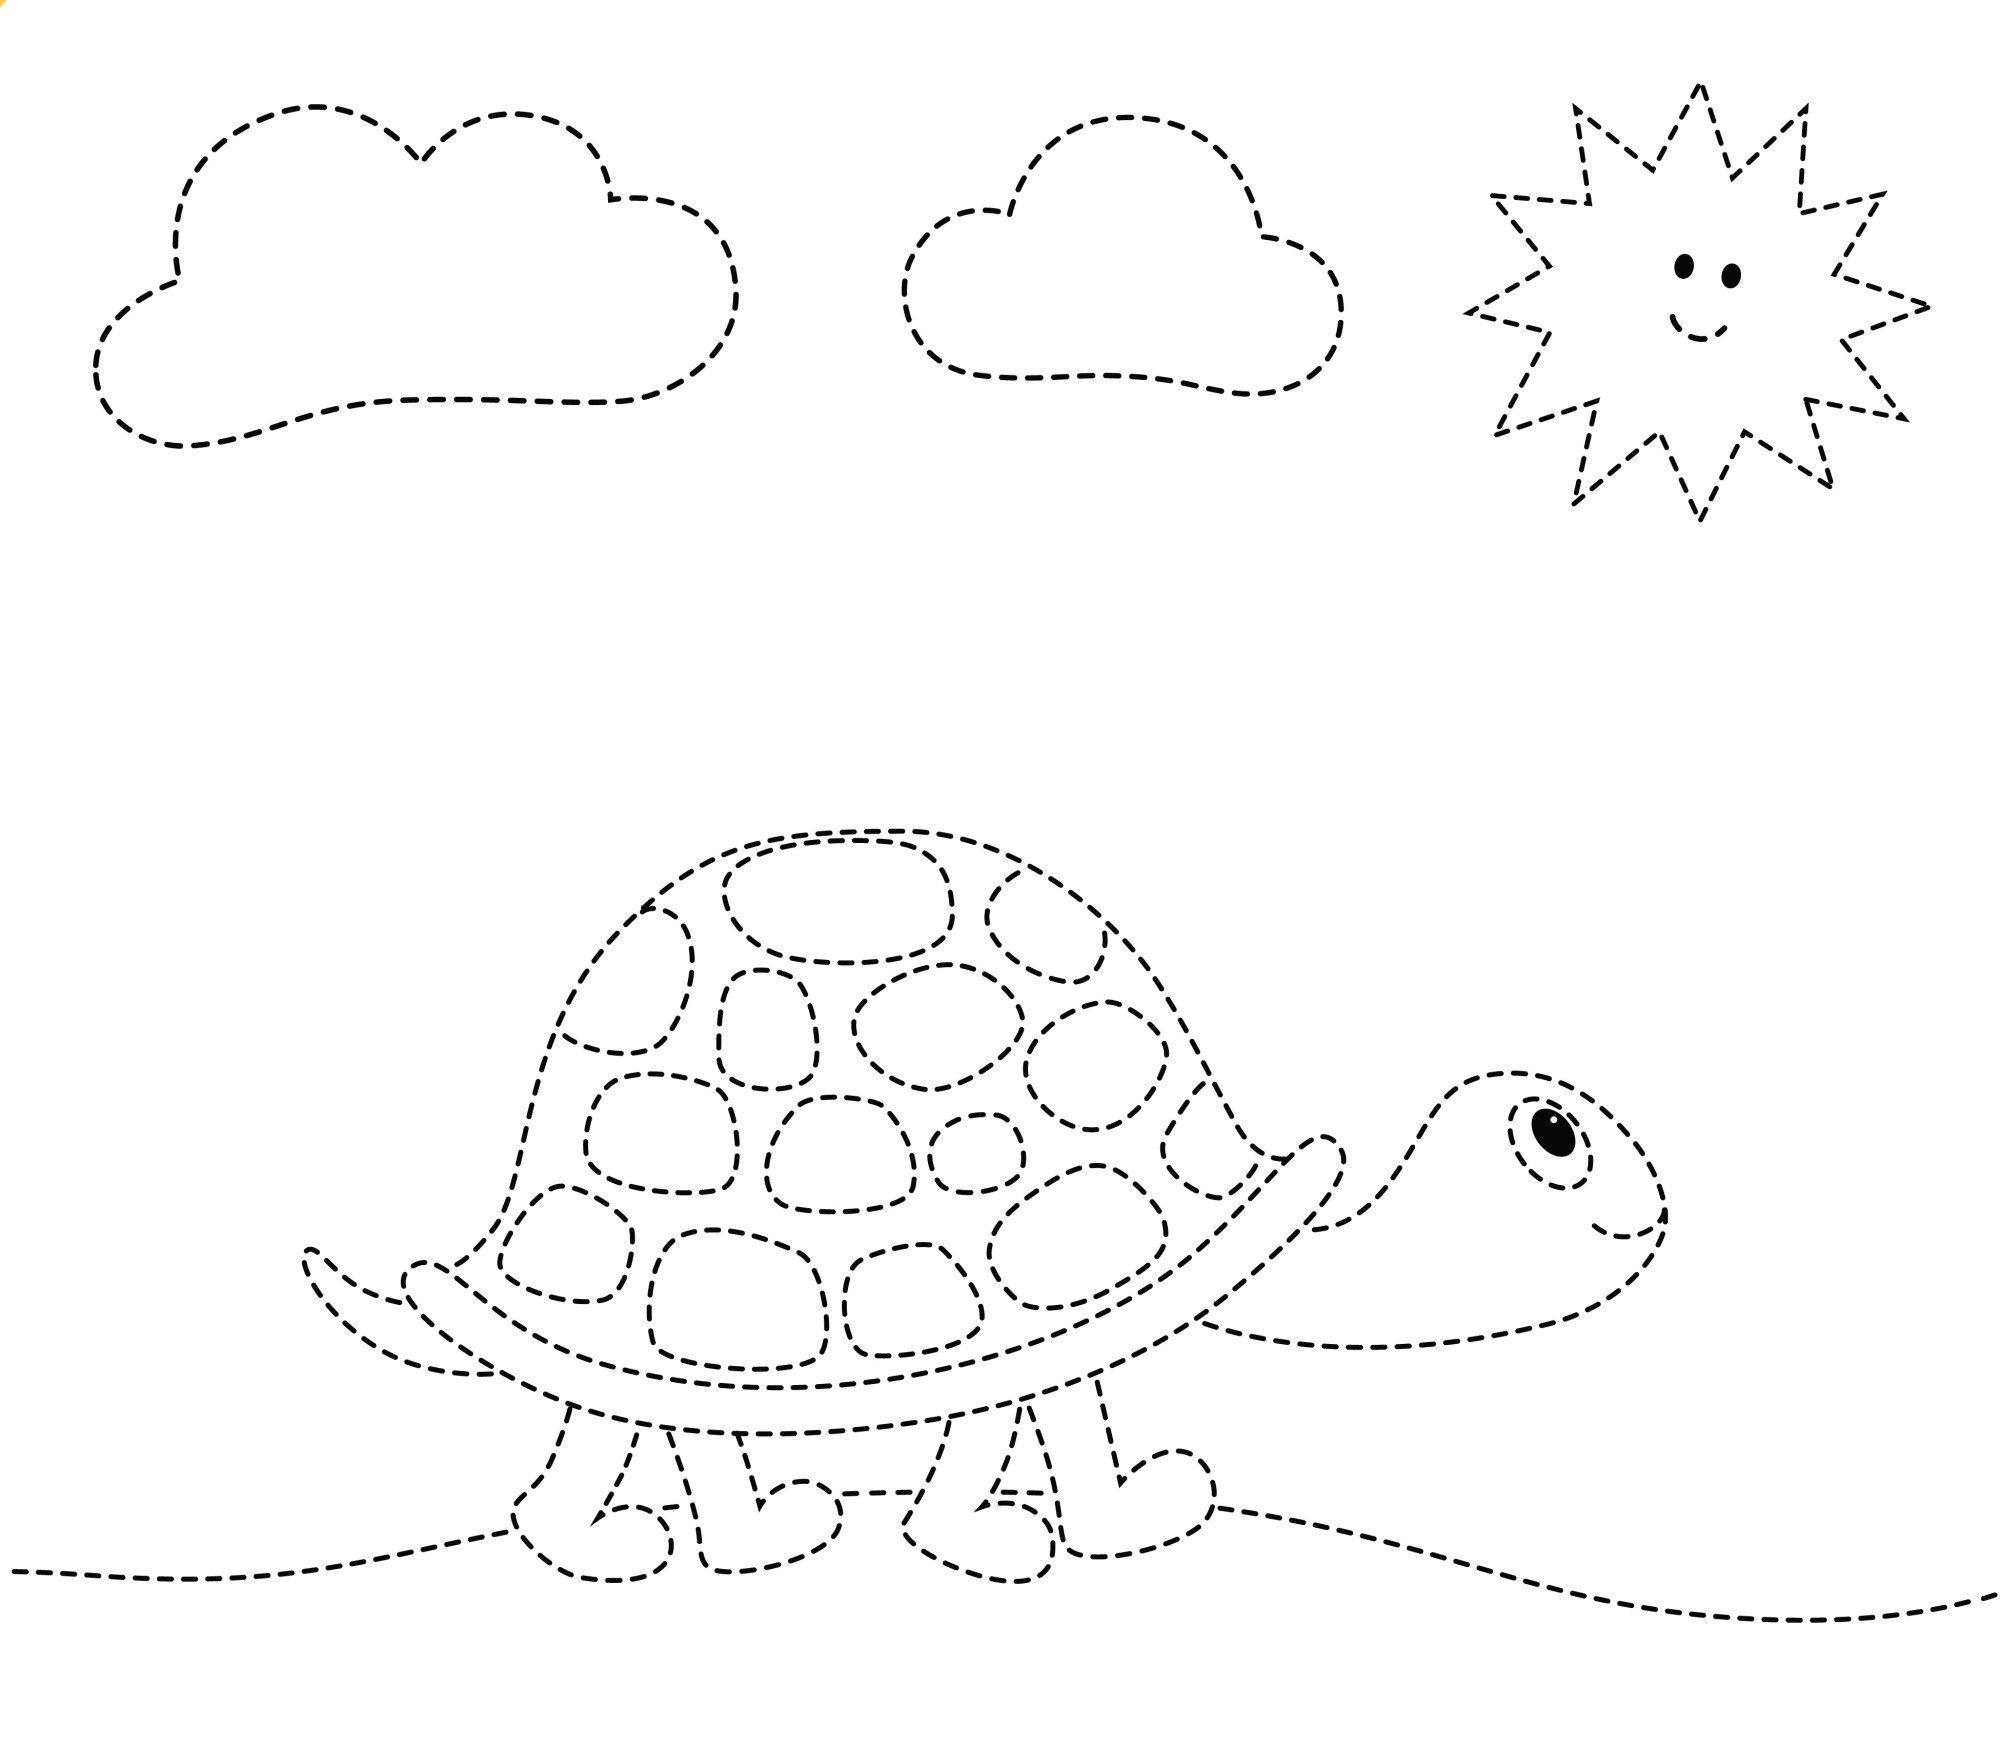 Раскраска для детей: черепаха по точкам